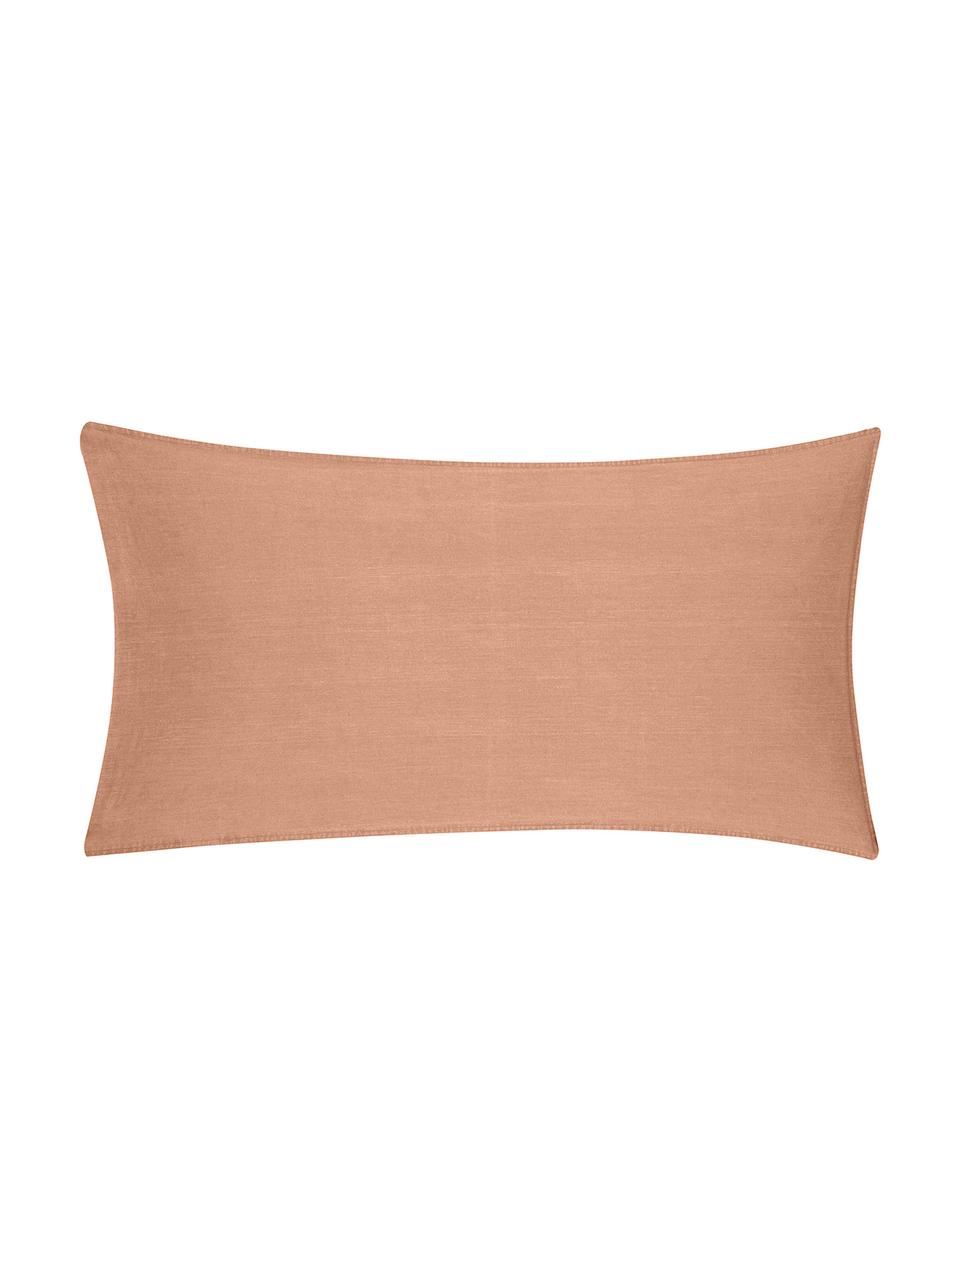 Poszewka na poduszkę z bawełny z efektem sprania Arlene, 2 szt., Morelowy, S 40 x D 80 cm